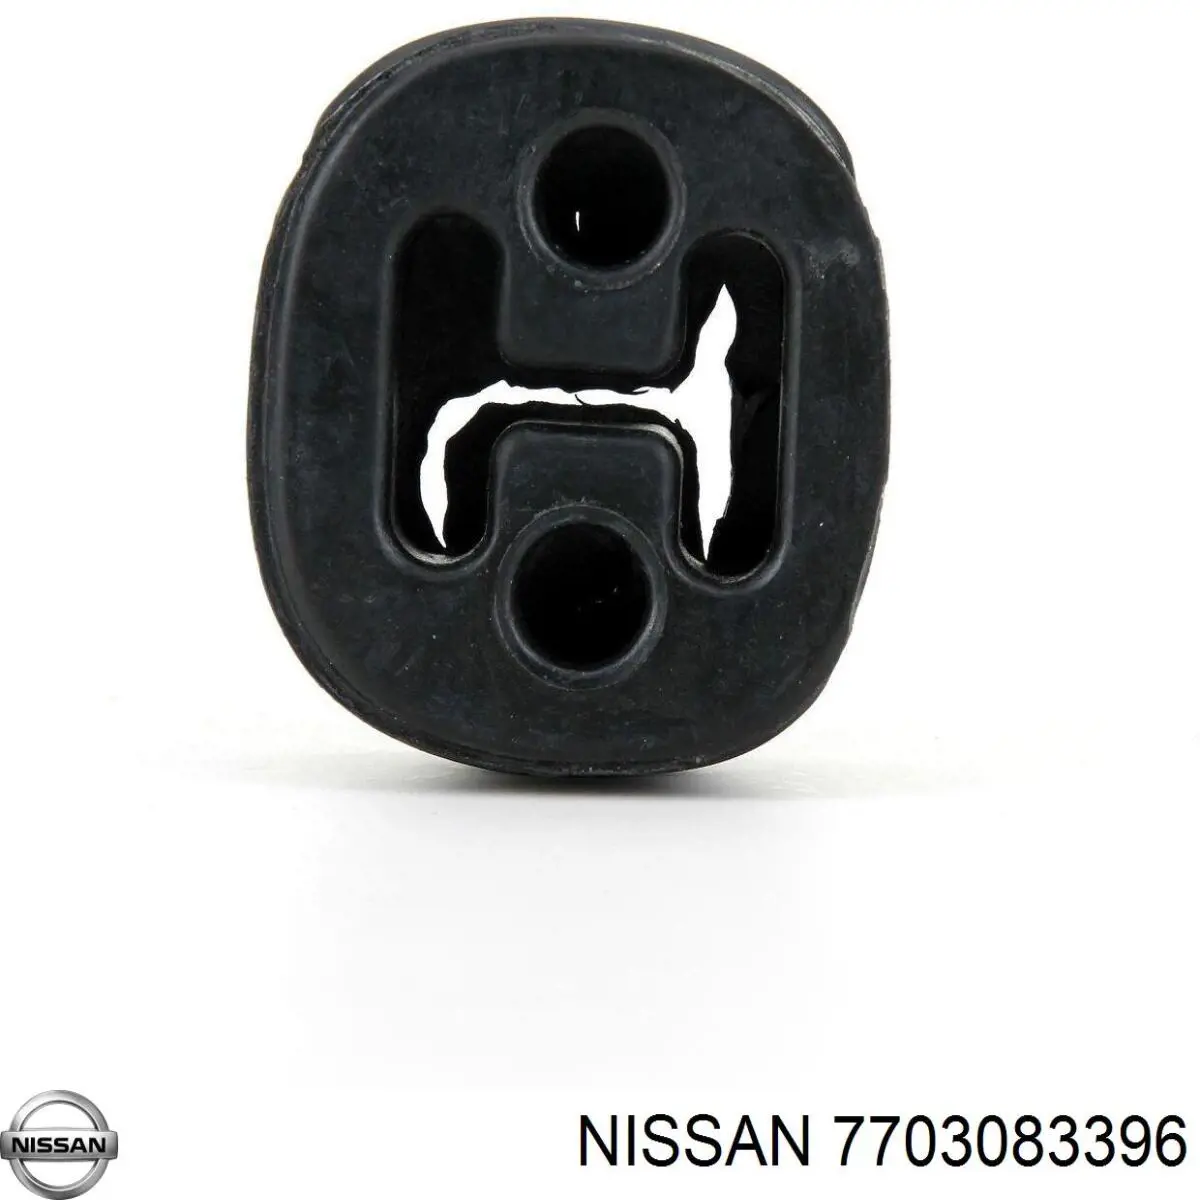 7703083396 Nissan abrazadera de sujeción delantera